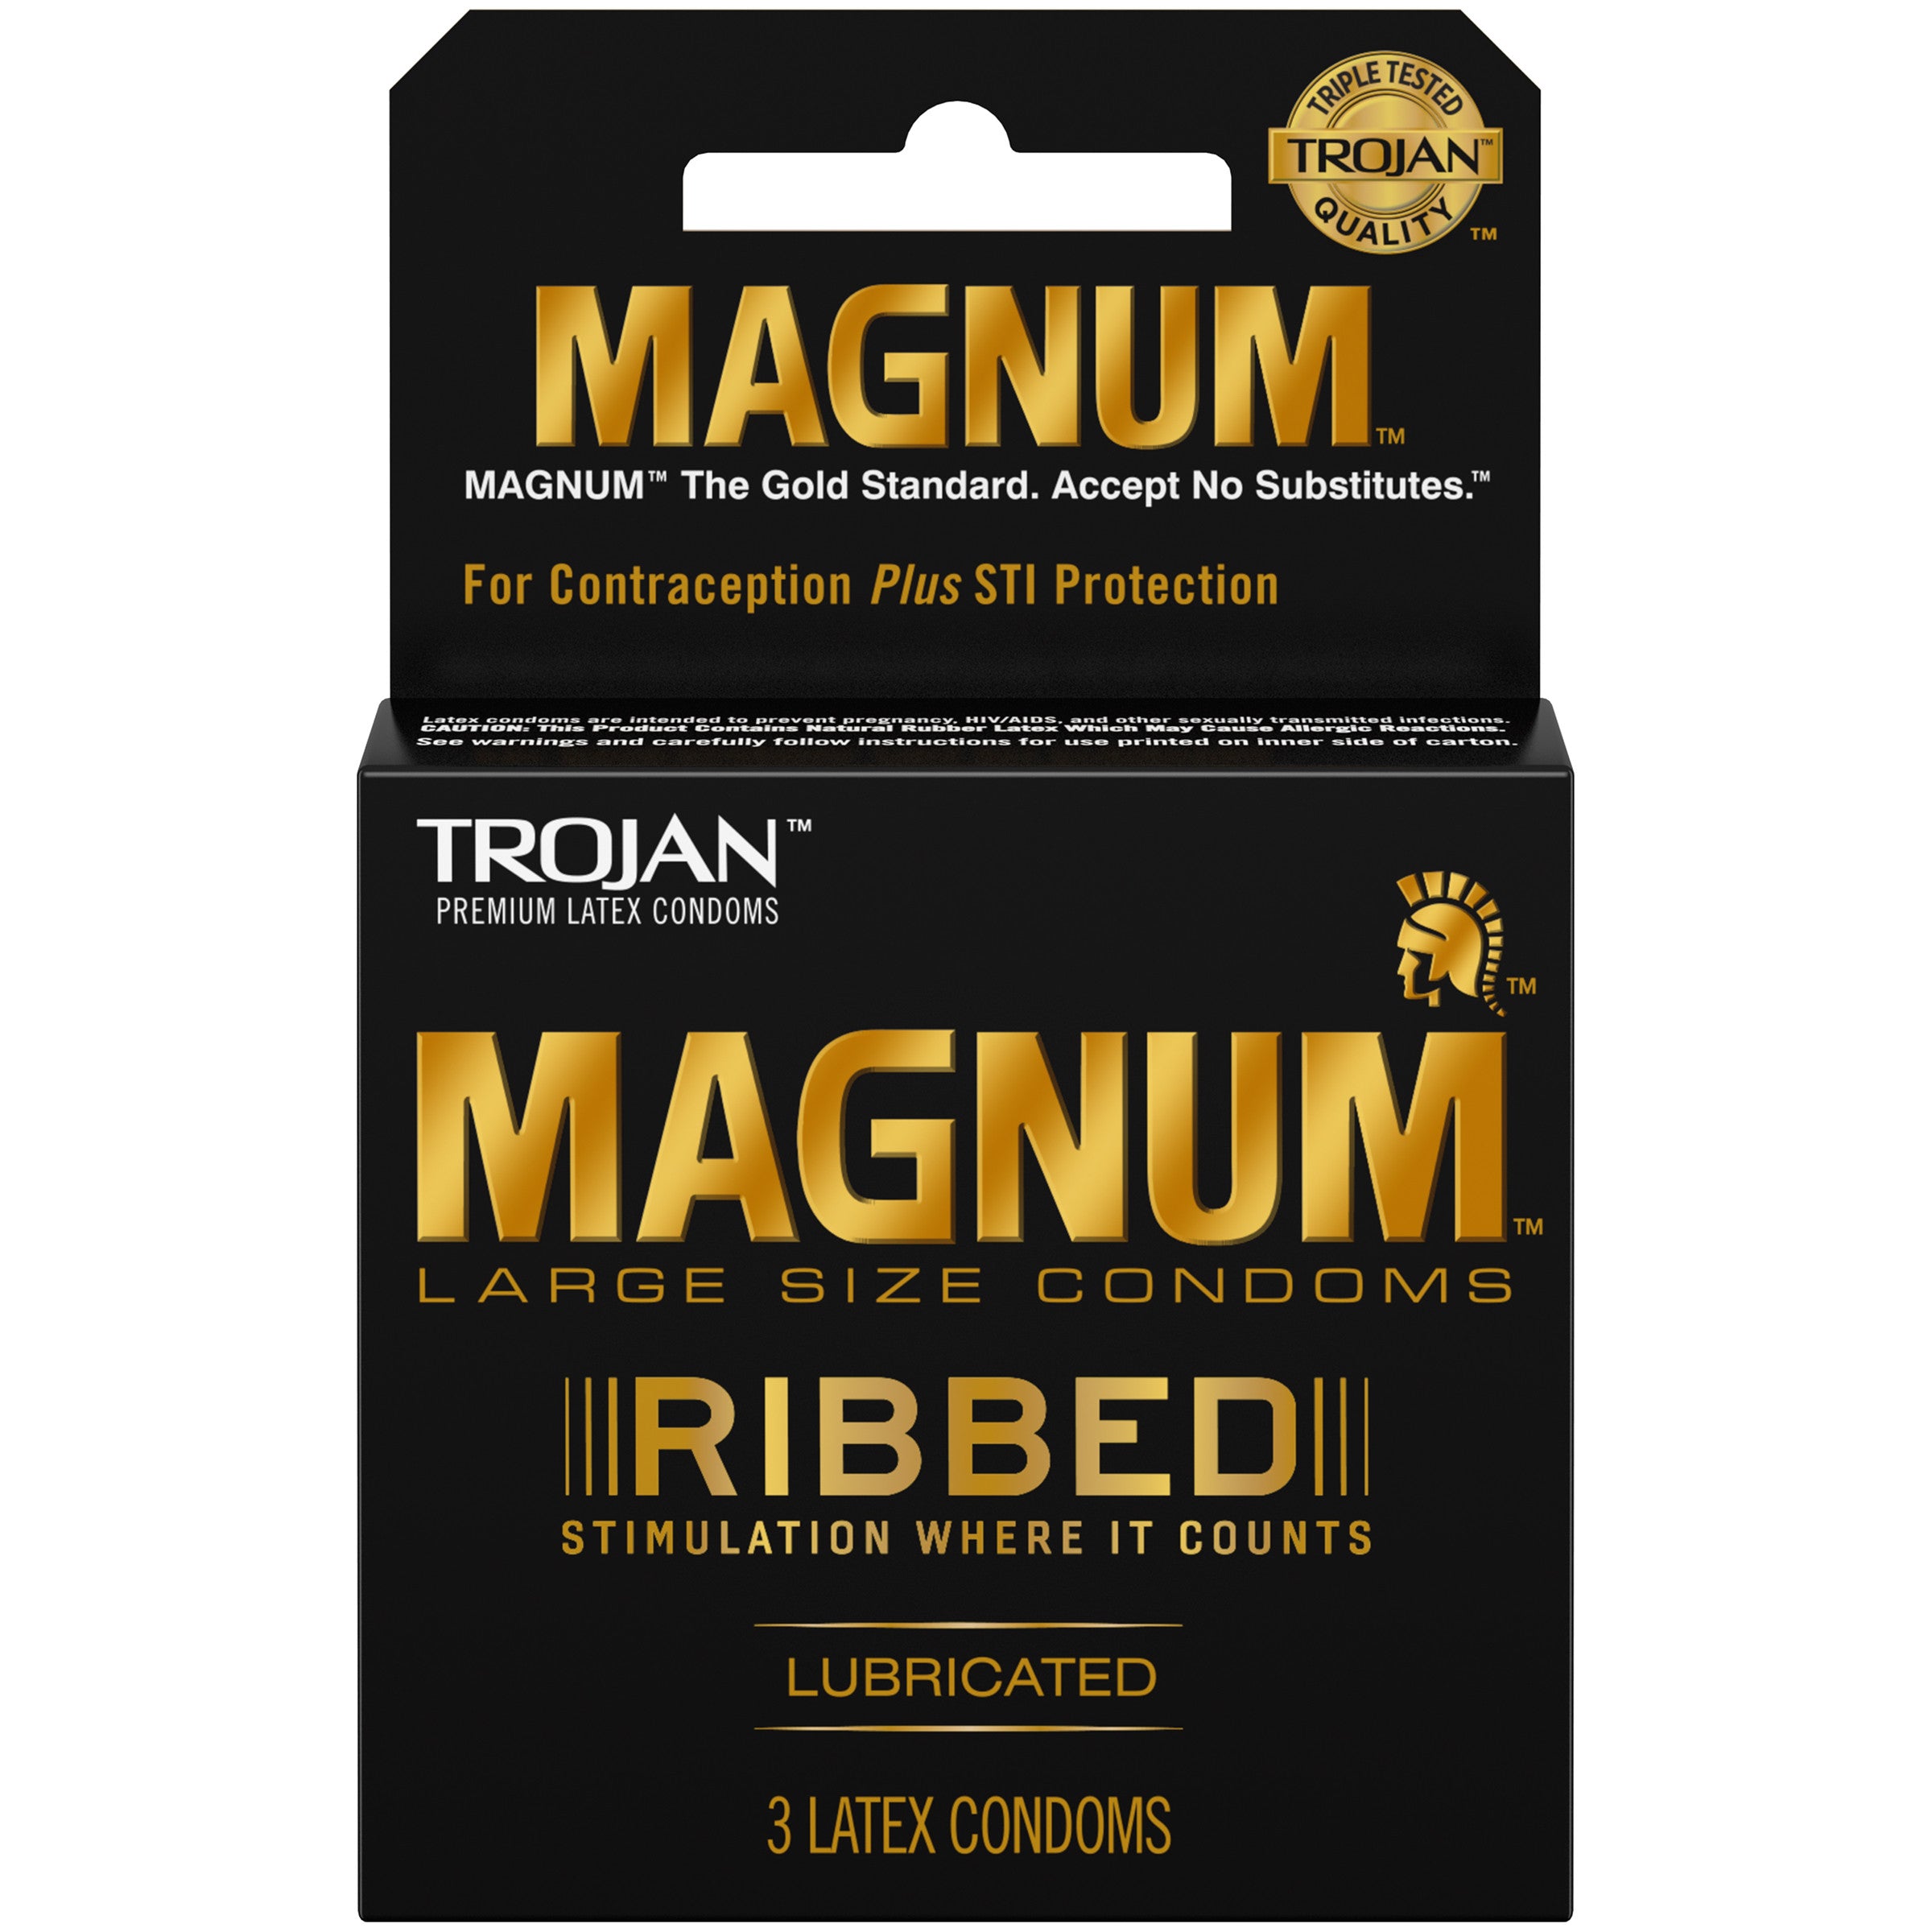 unused condoms